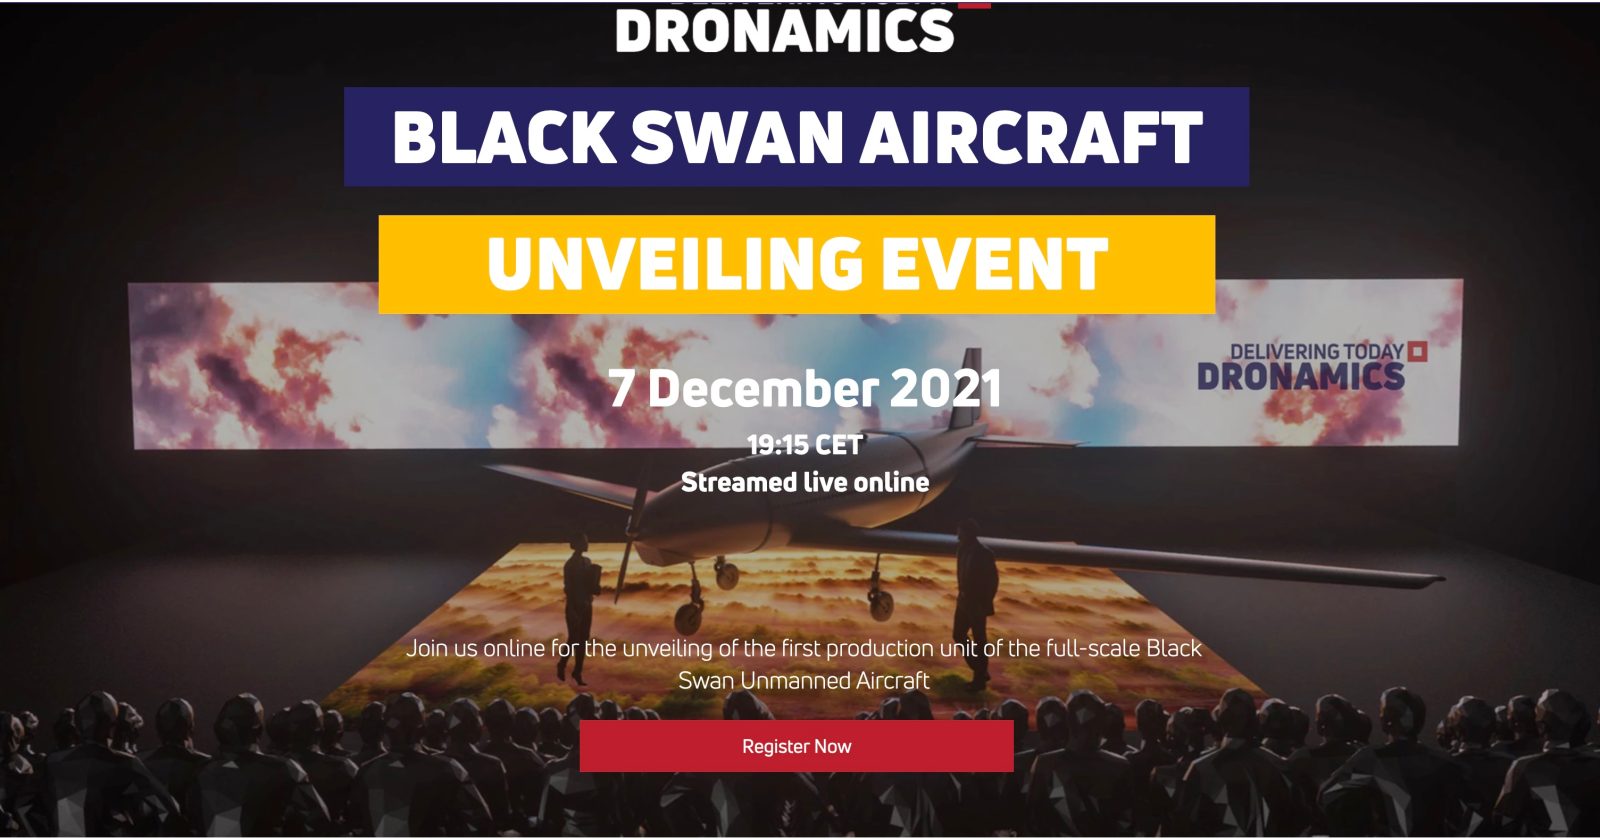 Dronamics drone deliveries